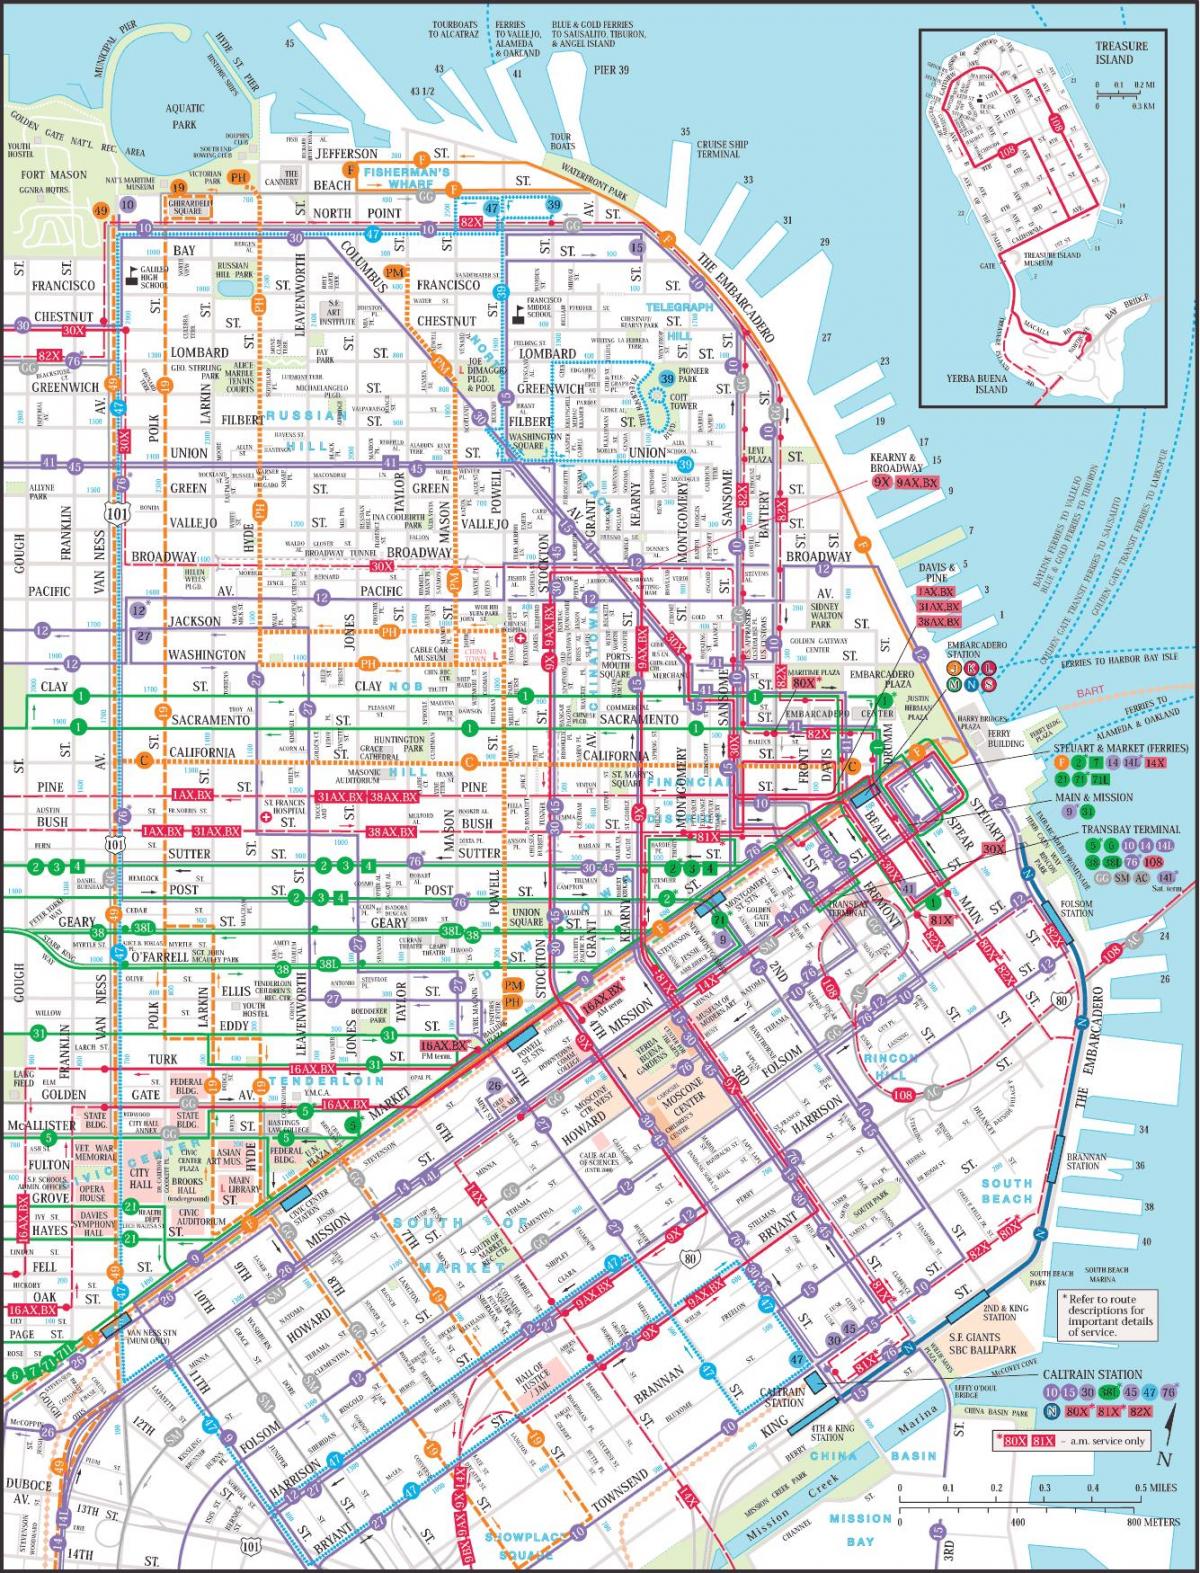 Սան-Ֆրանցիսկո քաղաքի հասարակական տրանսպորտի քարտեզ